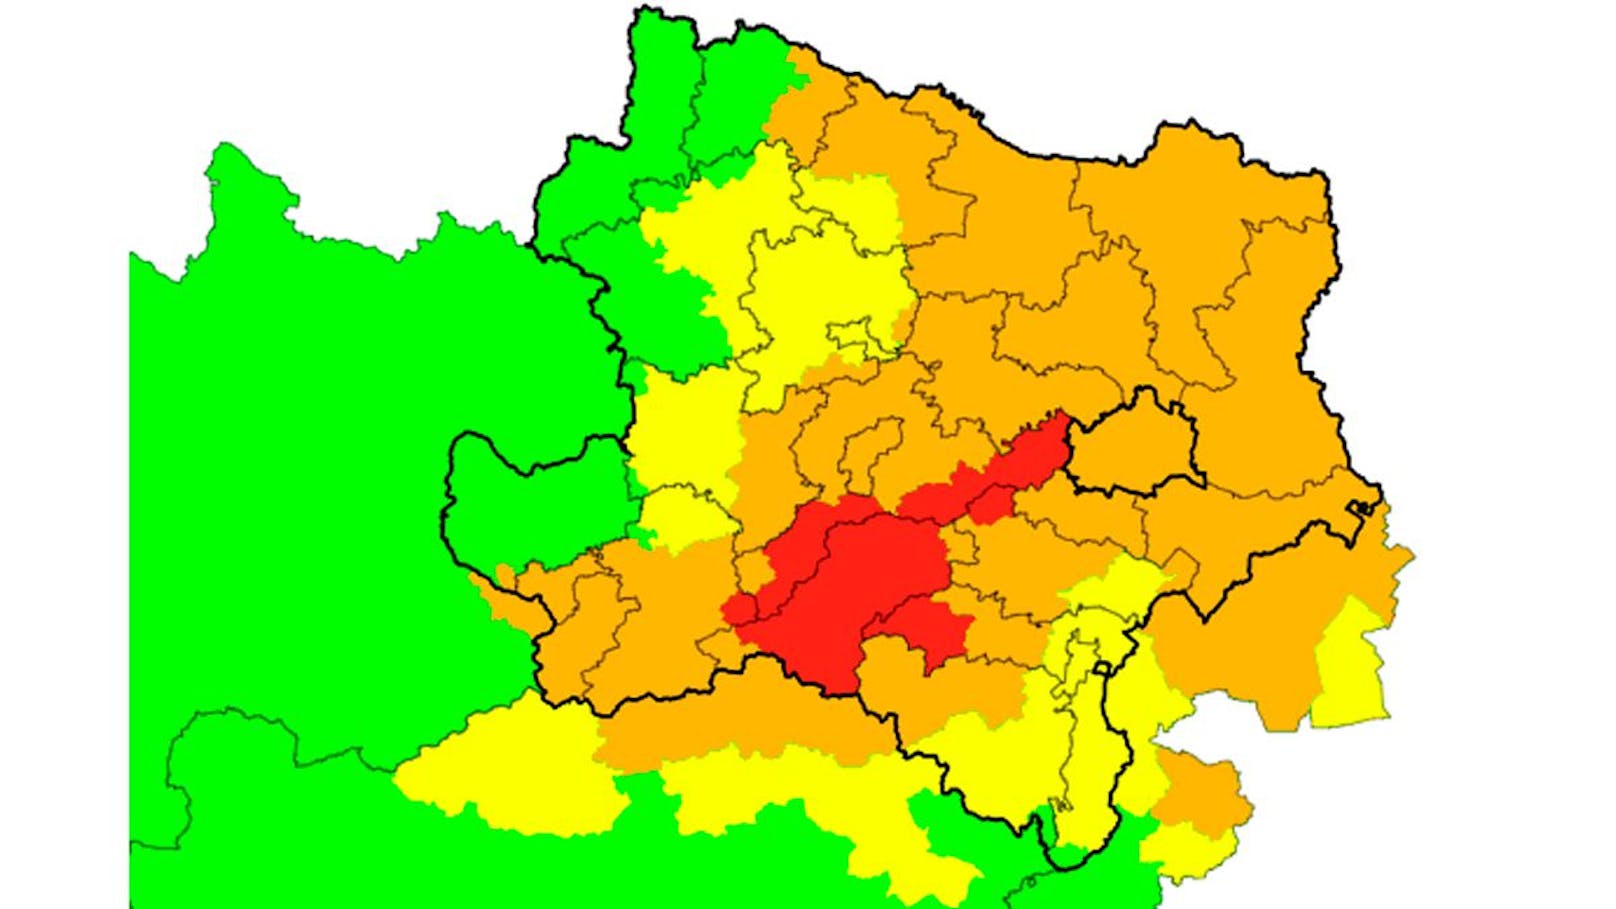 Achtung, Starkregen im Osten: In diesen Bezirken gilt bis Dienstagnachmittag Warnstufe Rot. In beinahe ganz NÖ ist zudem mit "markantem Wetter" (orange) zu rechnen.